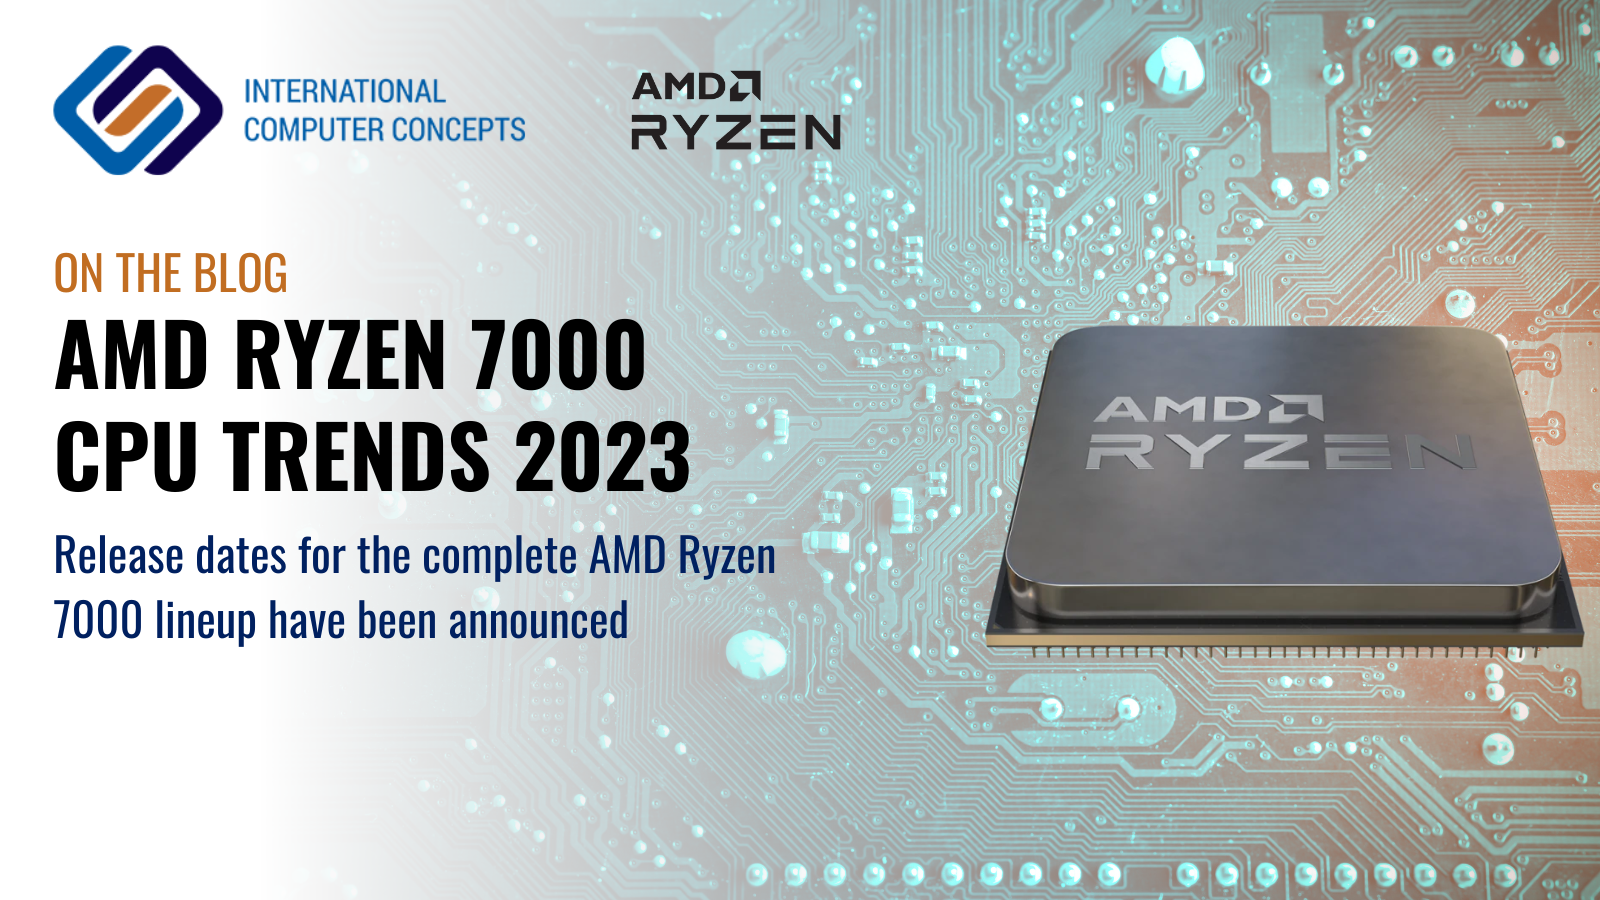 CPU trends in 2023 - AMD Ryzen 7000